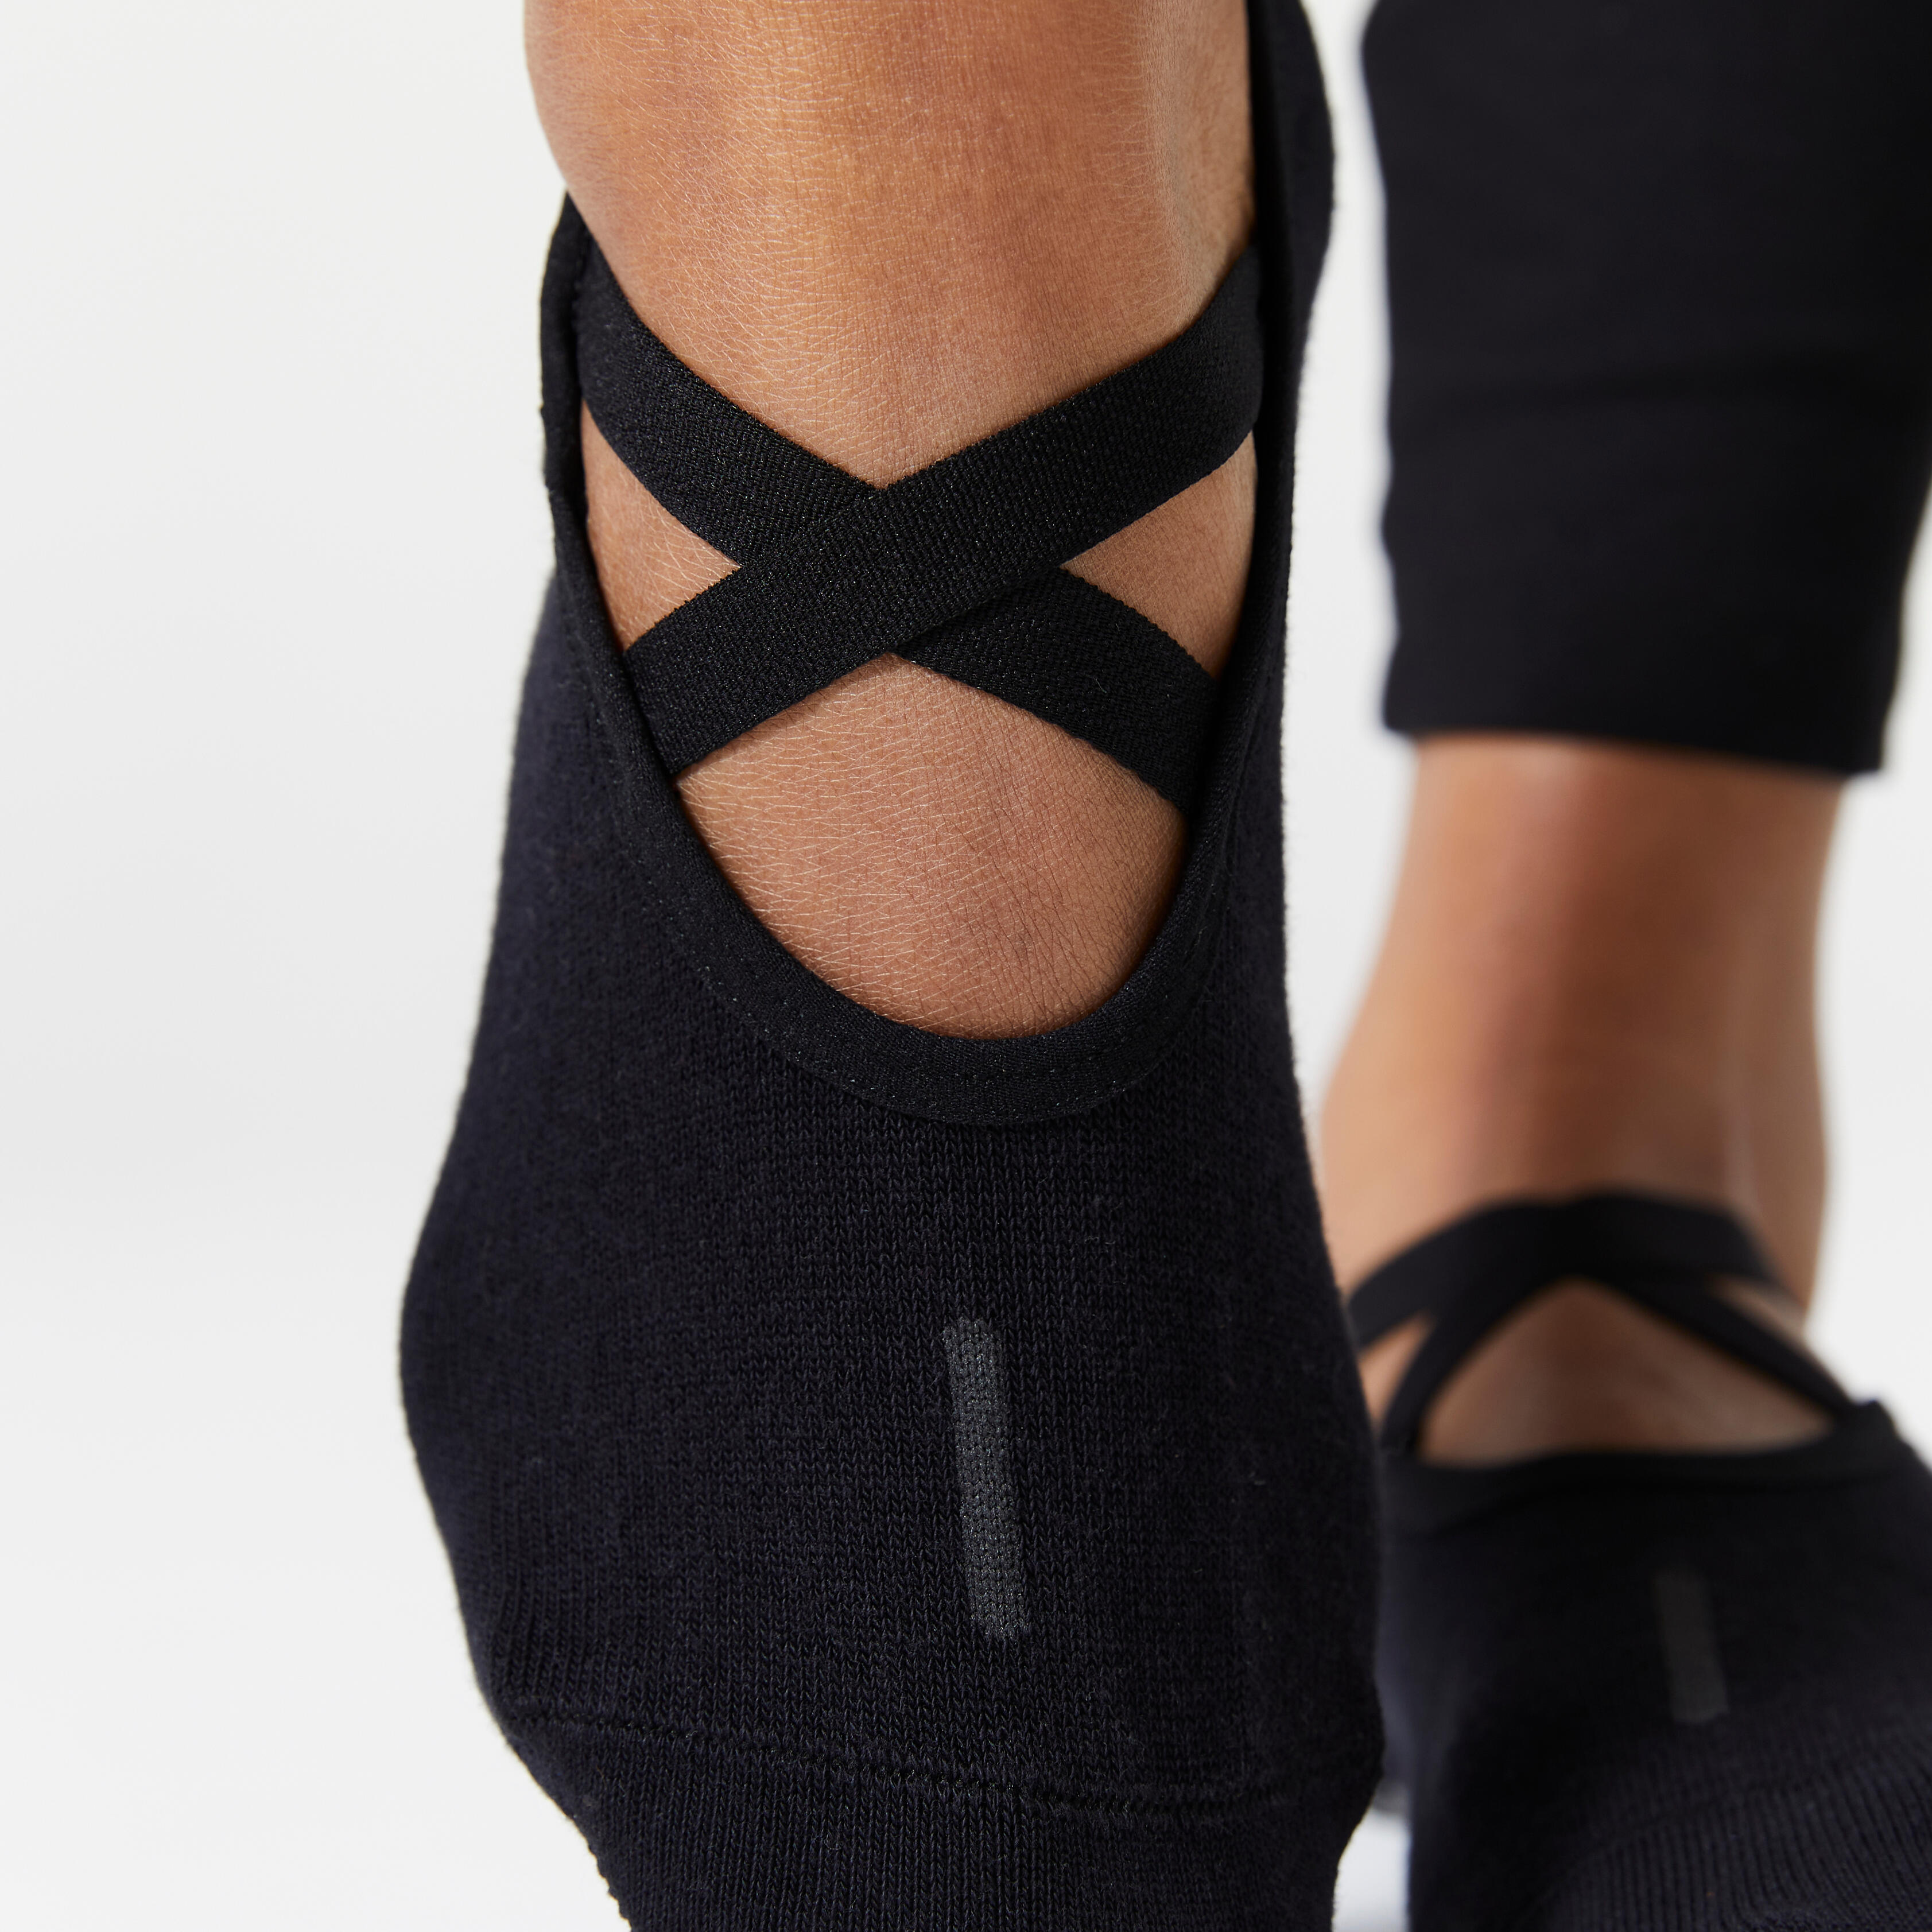 Women Yoga Socks Non Slip Grip Cotton Pilates Socks Ladies Ballet